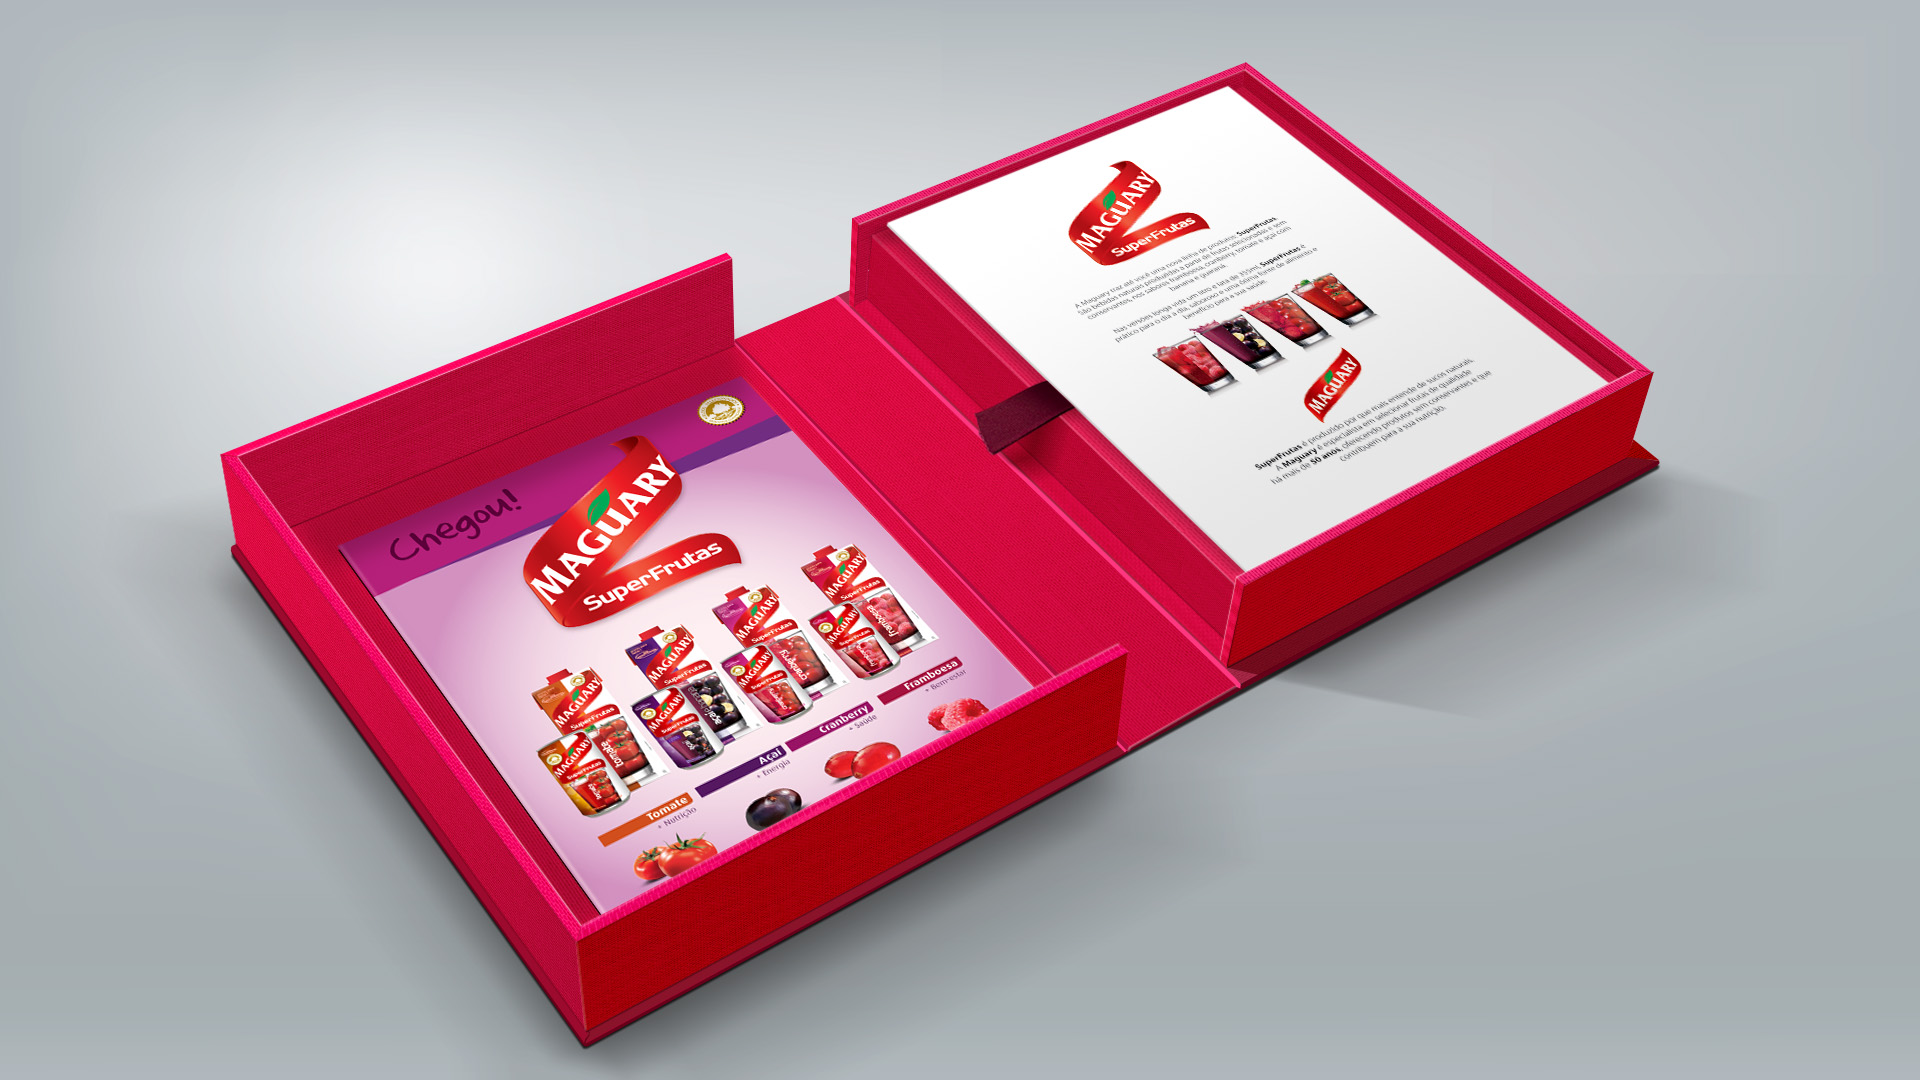 Imagem do press kit de lançamento de produtos SuperFrutas MAguary.